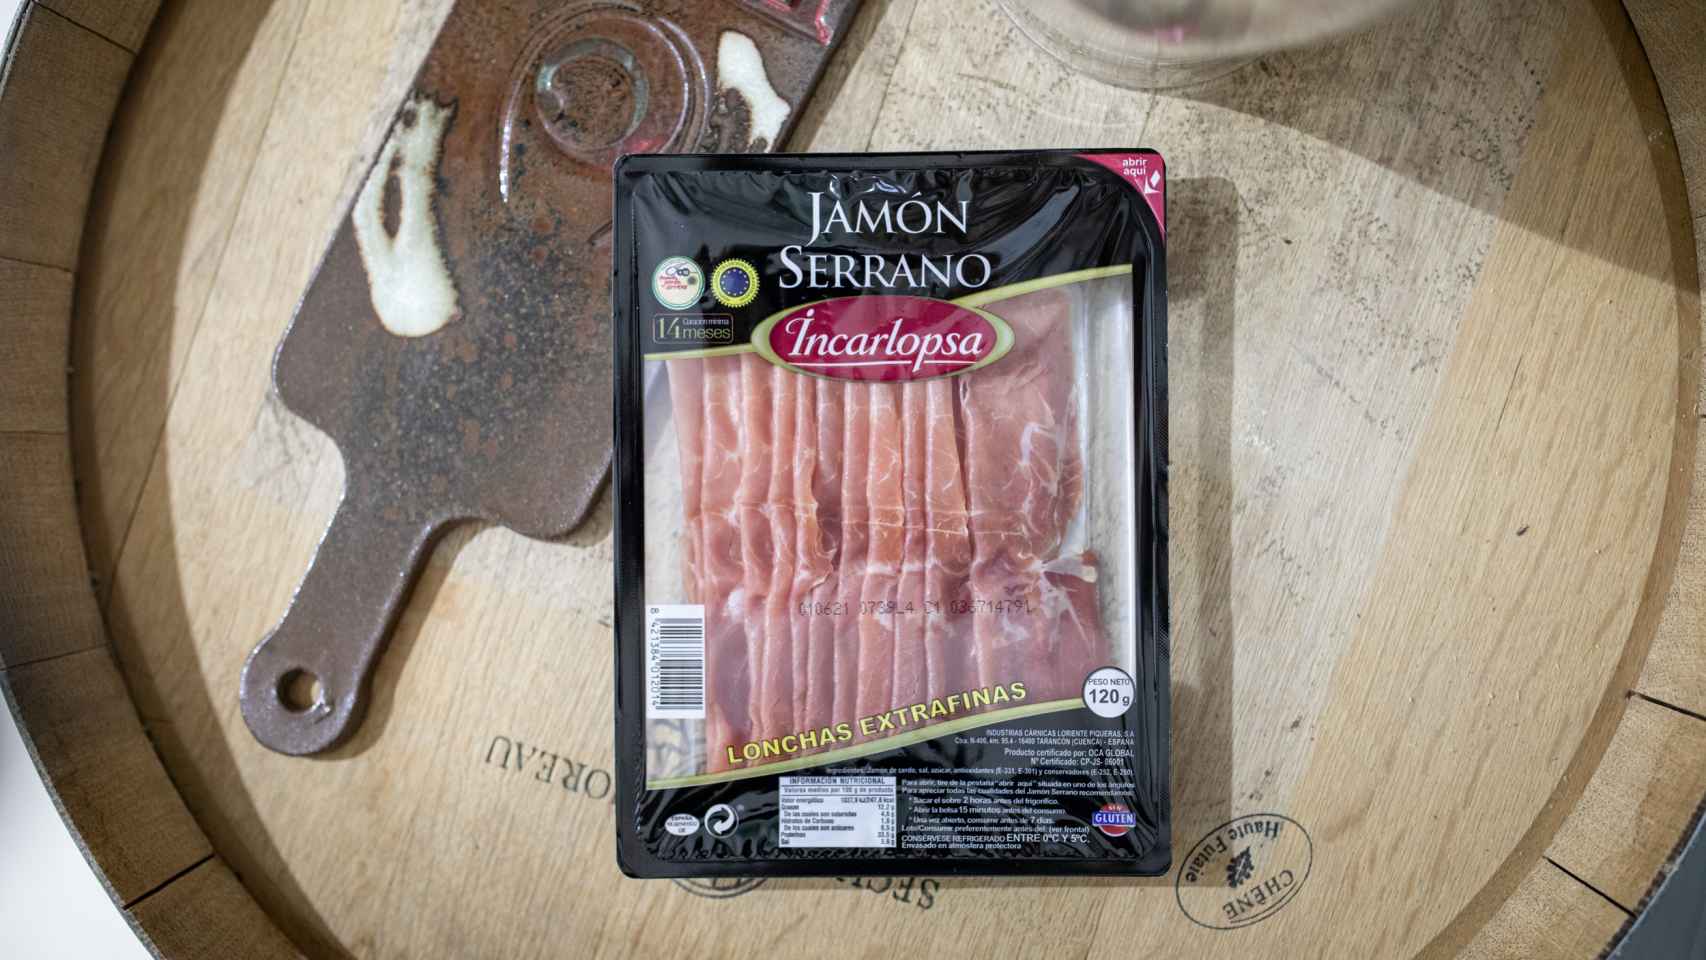 El paquete de jamón serrano de Incarlopsa, la marca blanca de Mercadona.